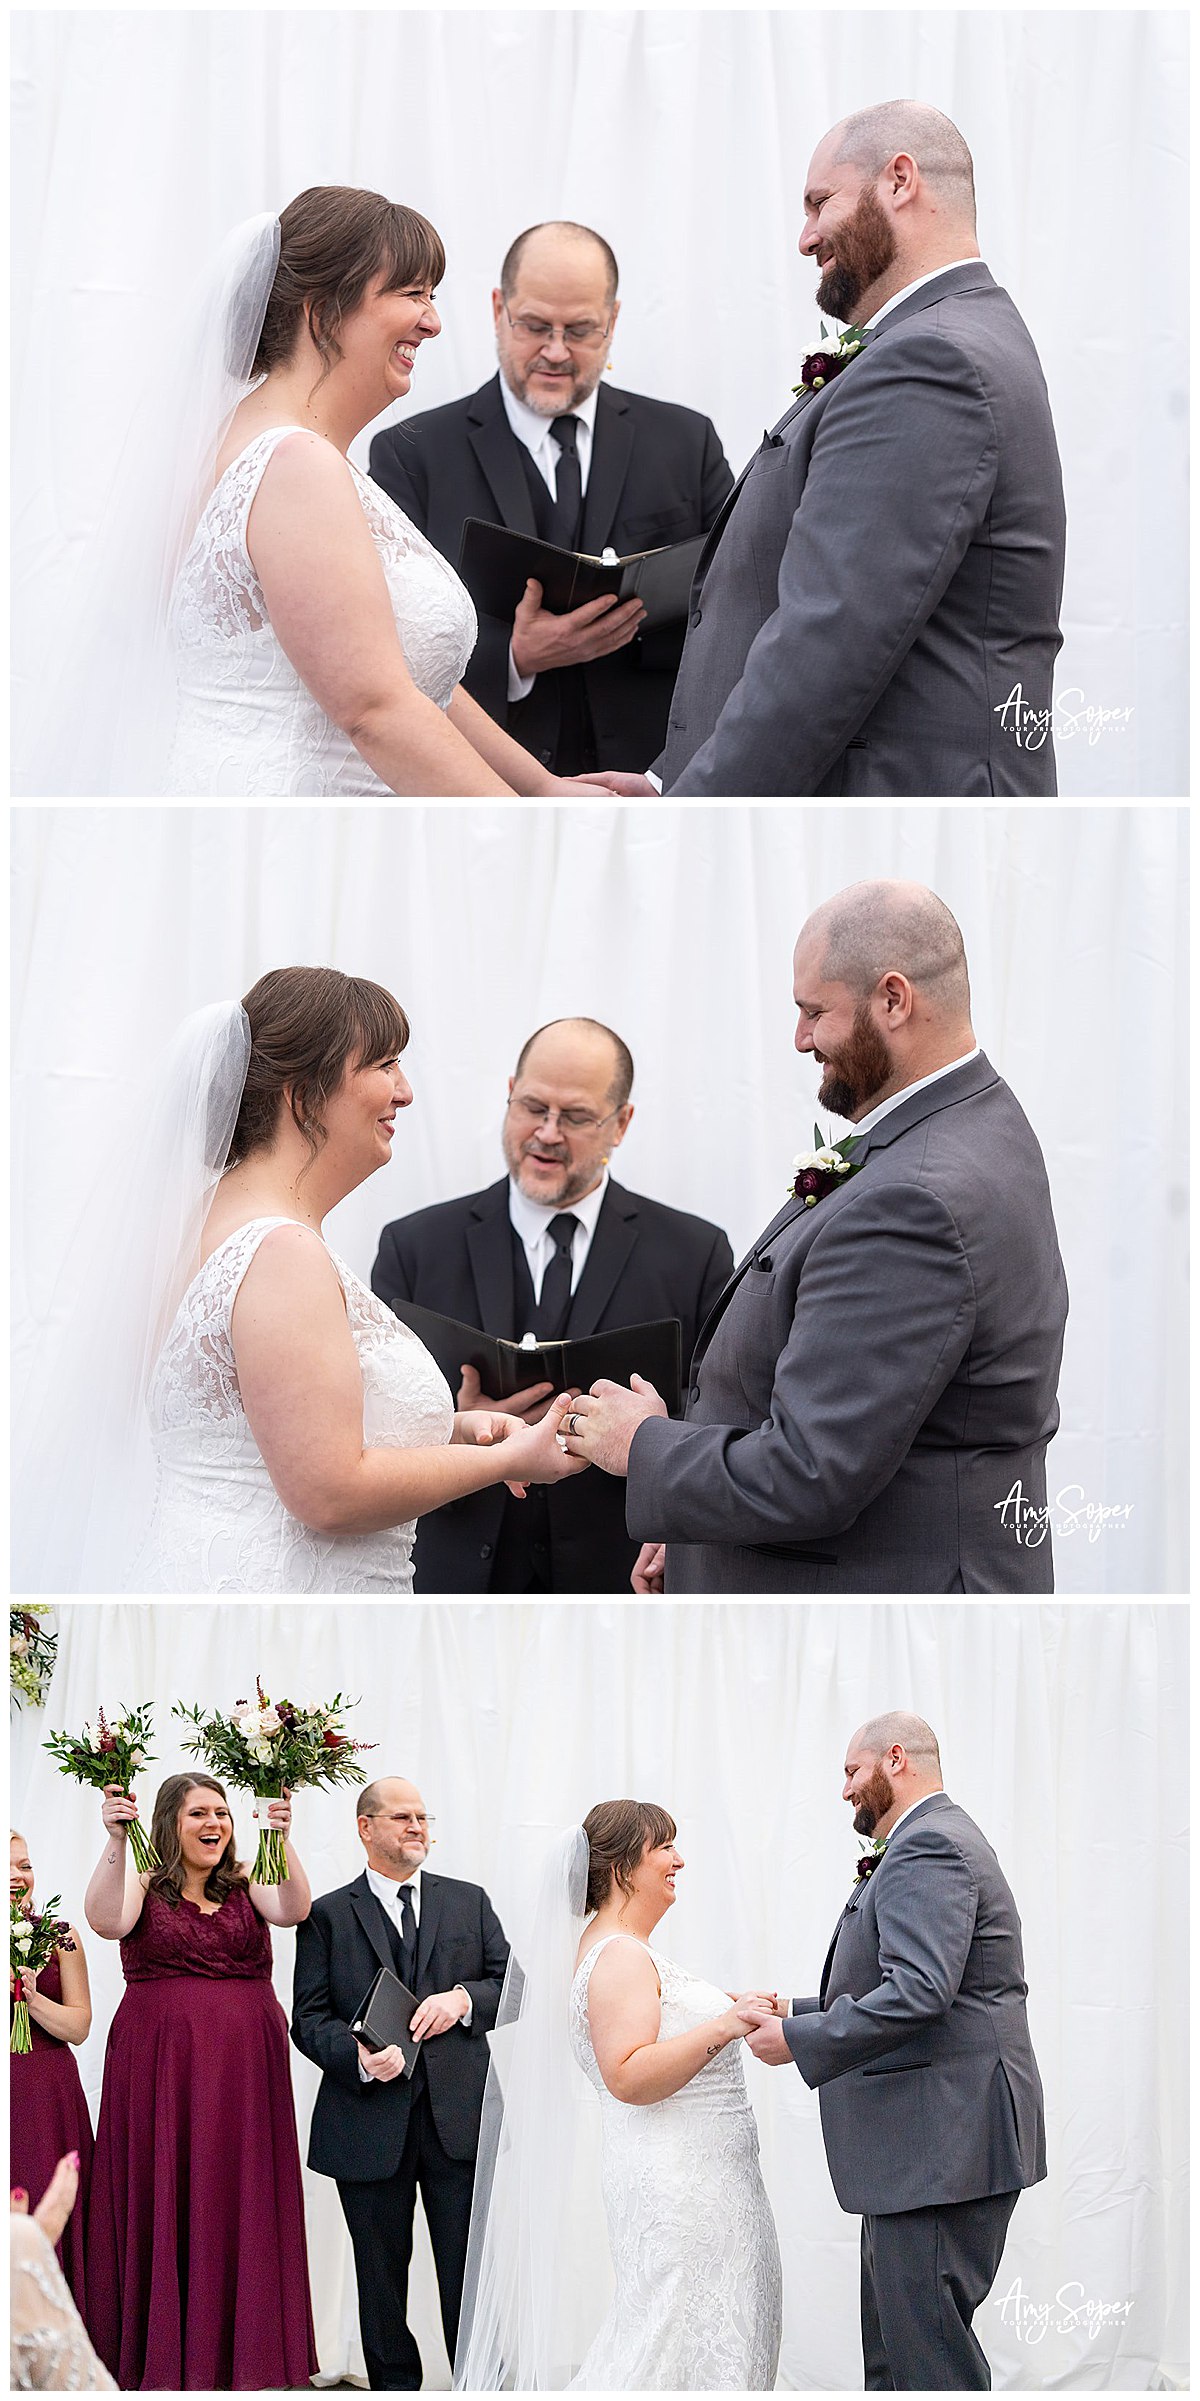 exchanging wedding vows